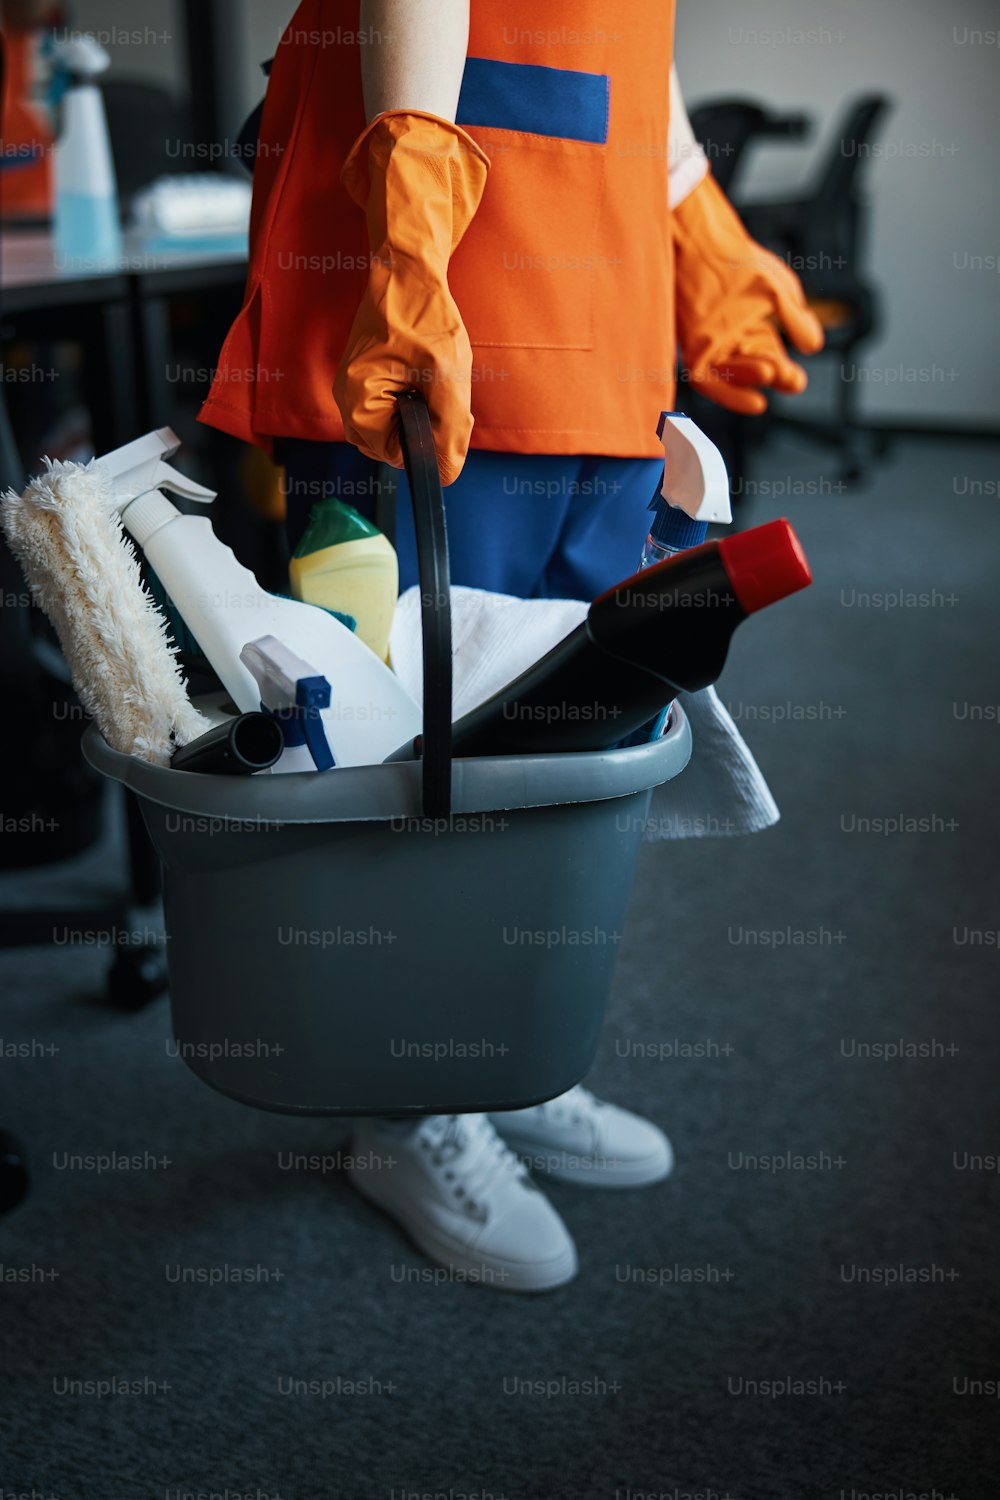 양손으로 청소 제품이 담긴 플라스틱 양동이를 들고 있는 여성 청소부의 자른 사진